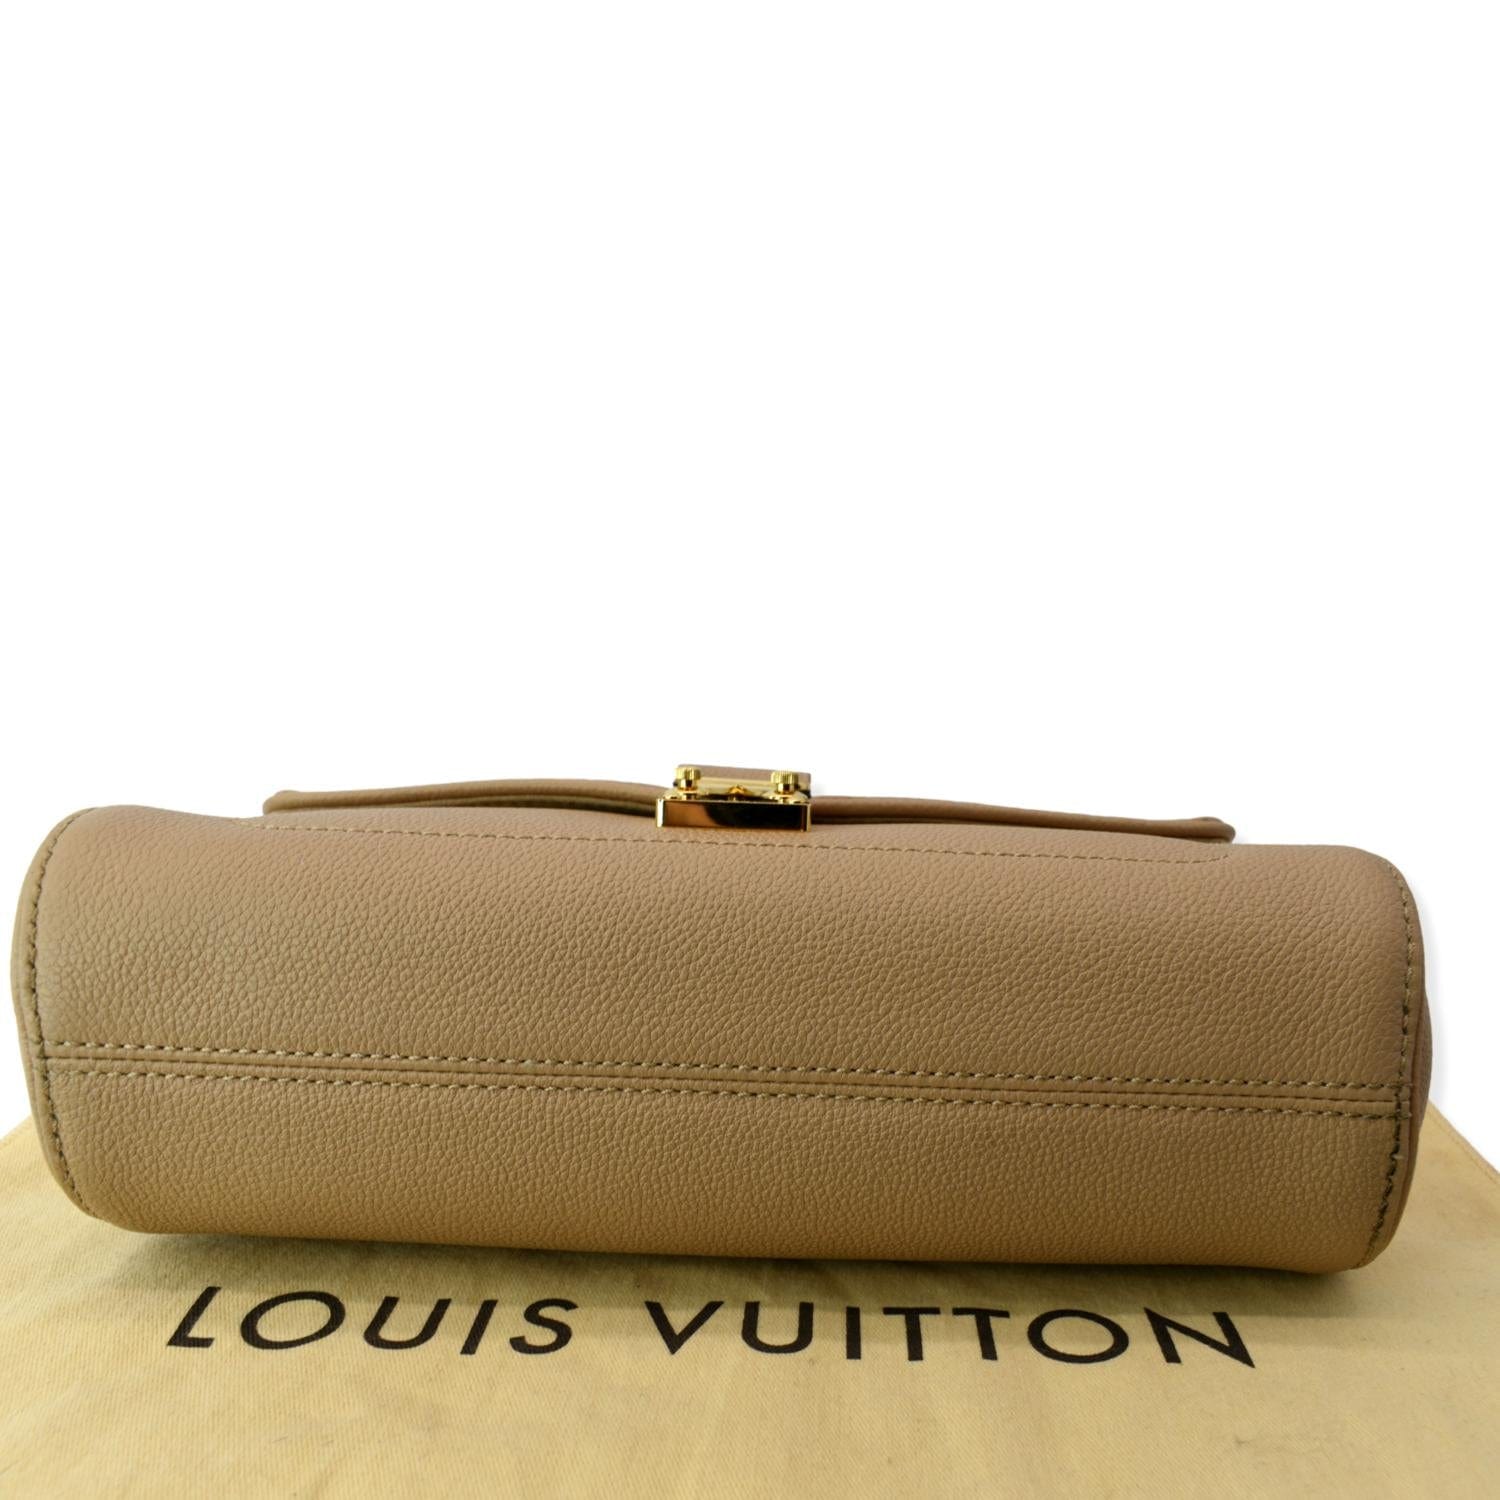 Guiar a: Louis Vuitton códigos de fecha – l'Étoile de Saint Honoré